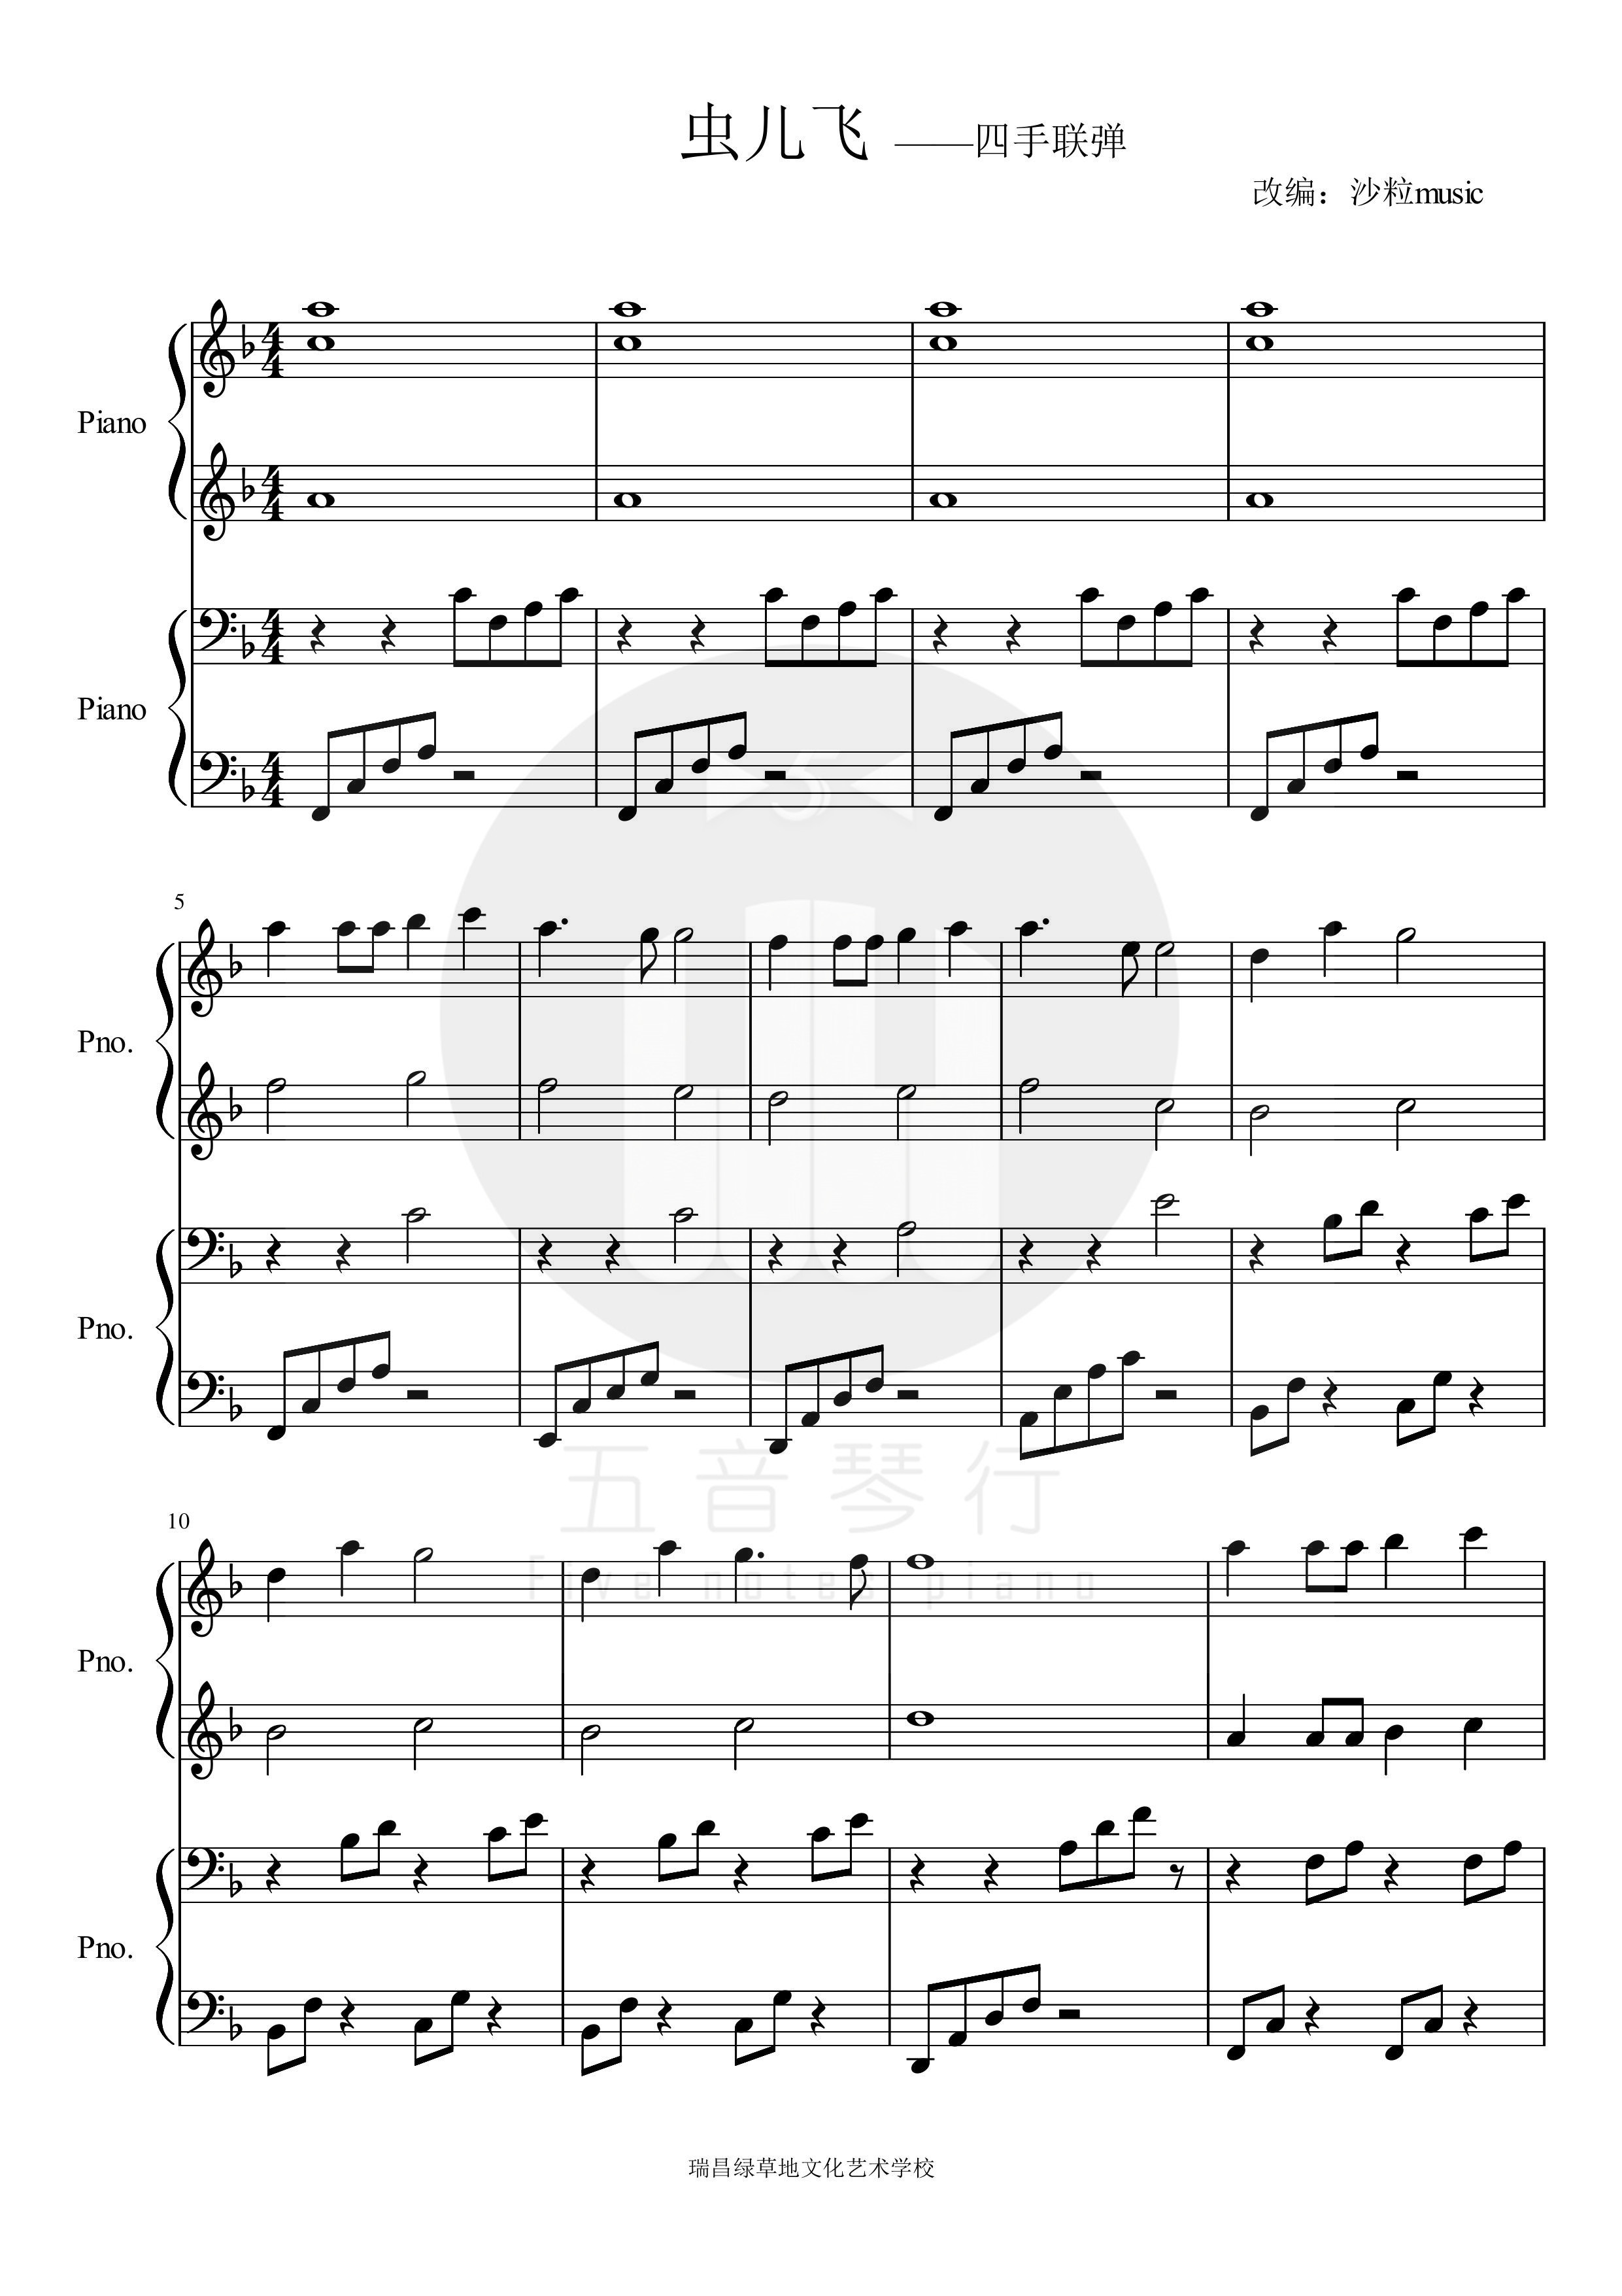 《虫儿飞》四手联弹 钢琴谱 汇报演出 五线谱 3页 简单